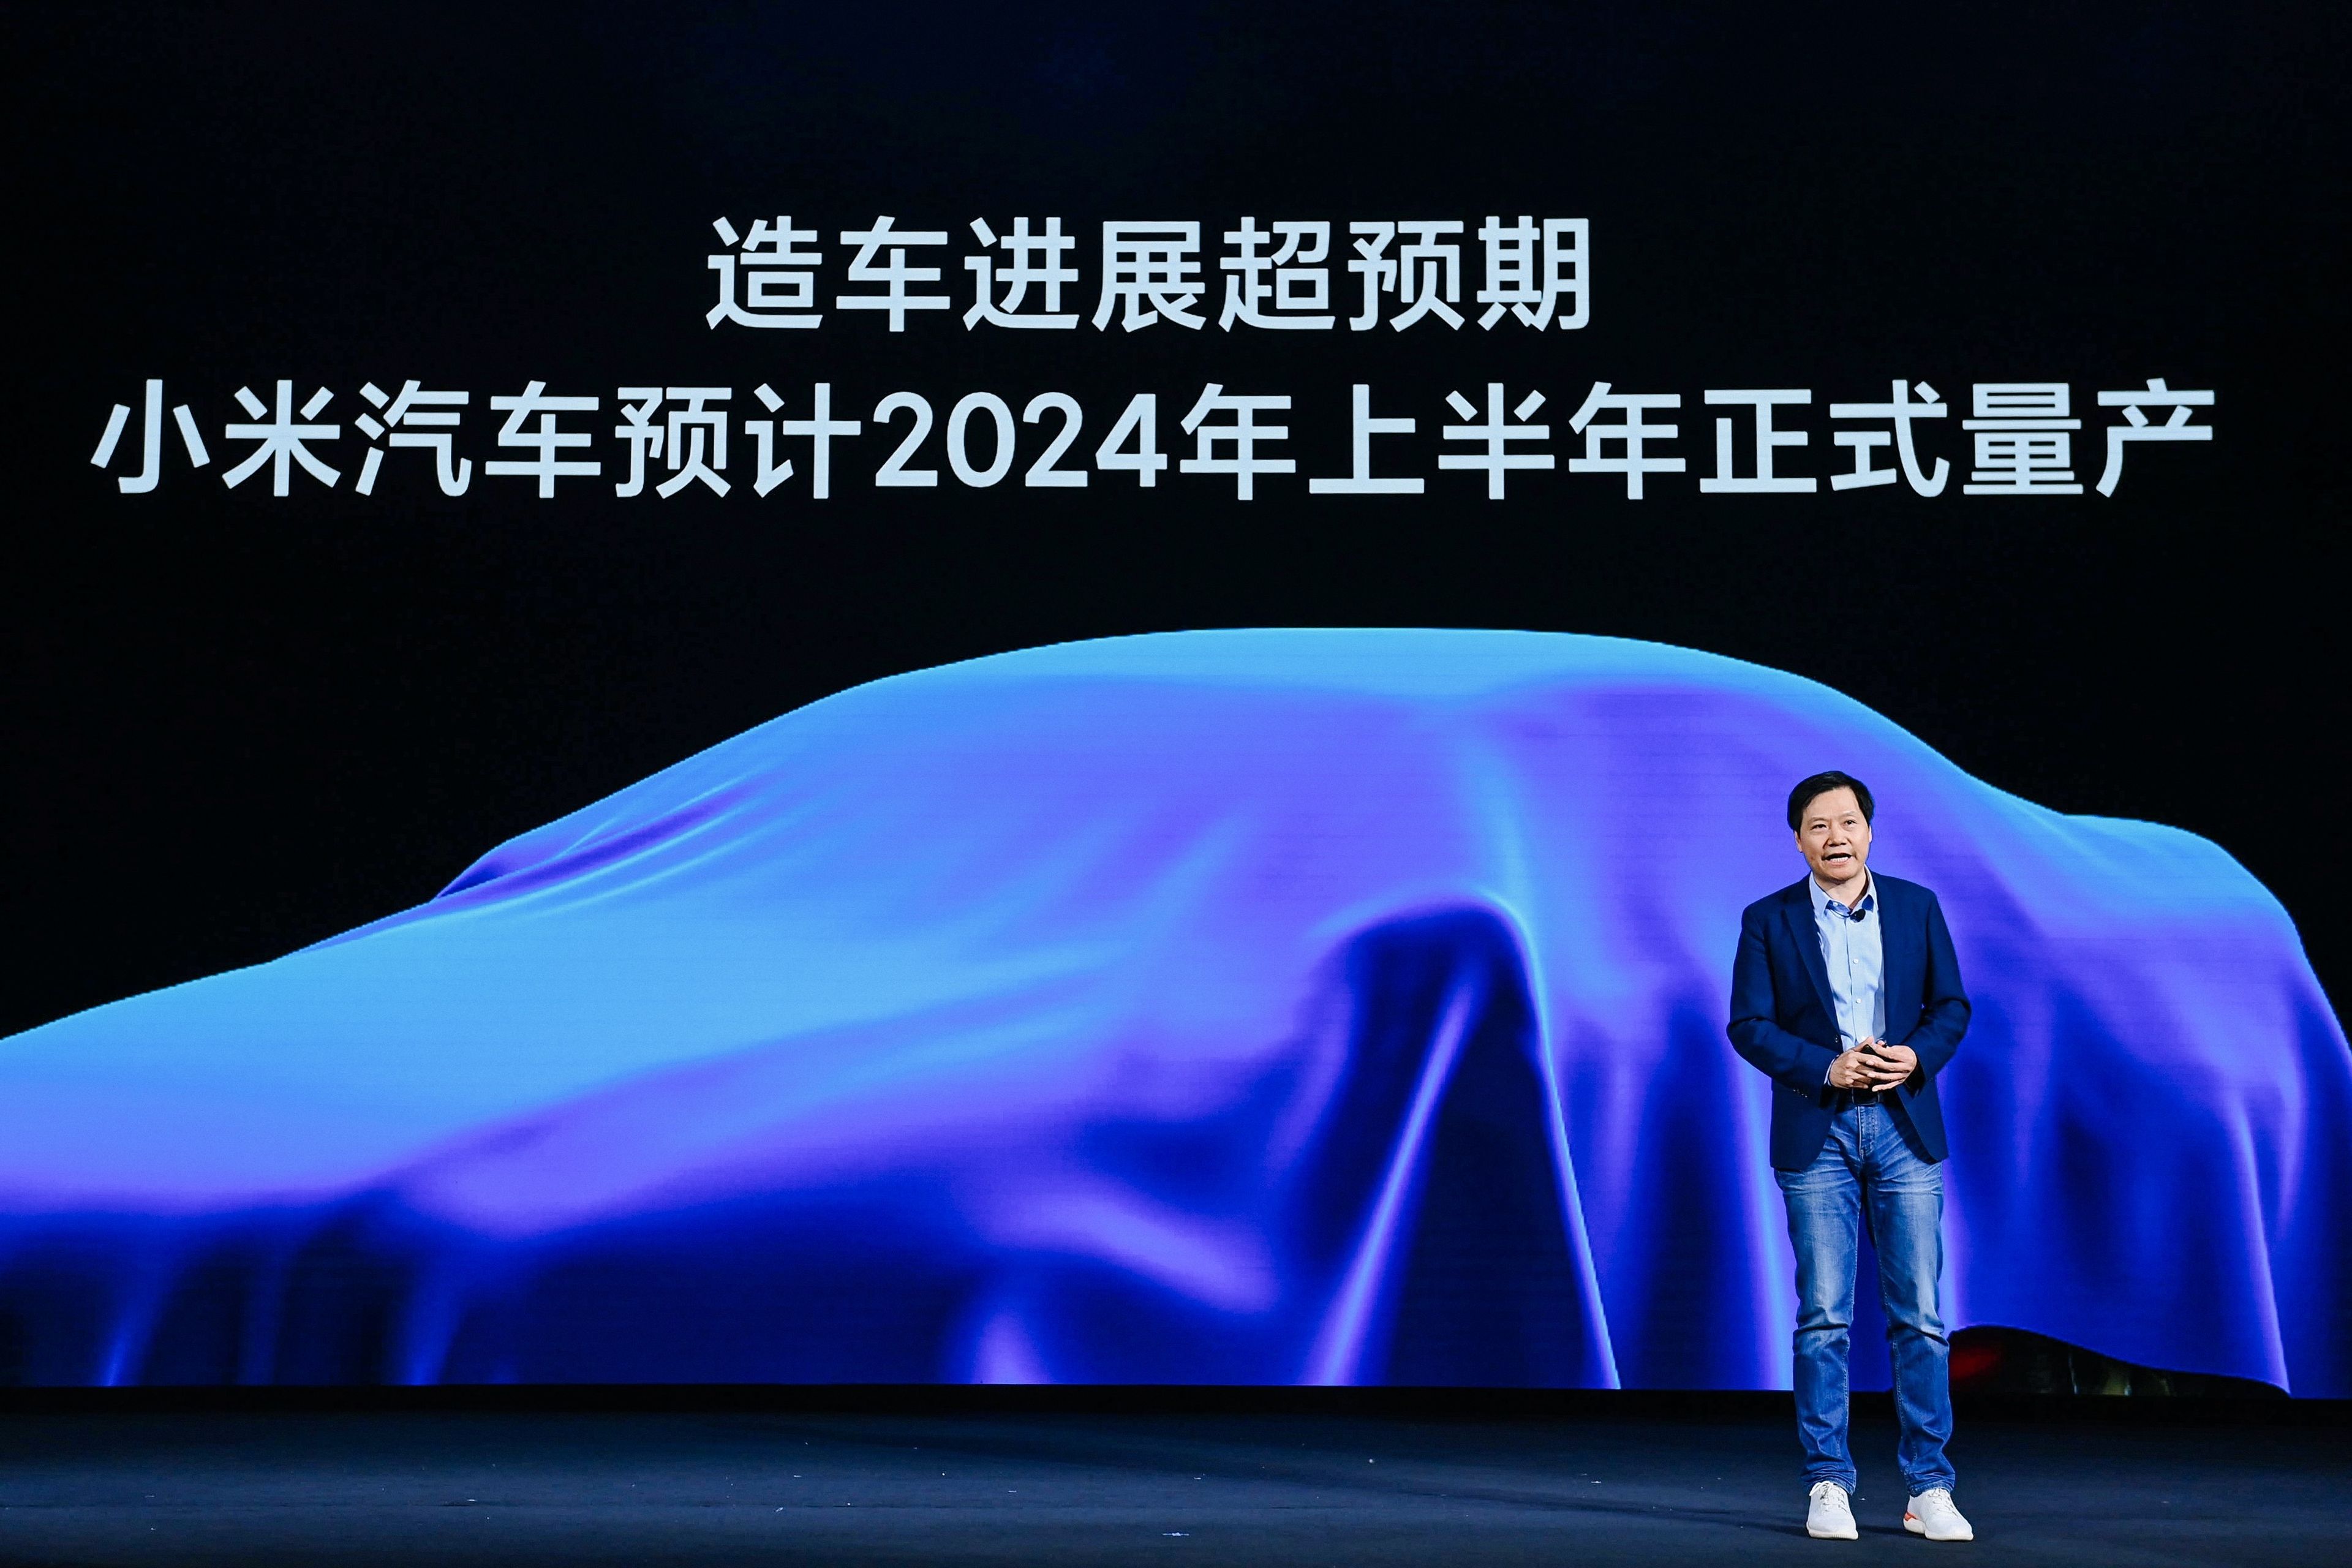 El coche eléctrico de Xiaomi llegaría mucho antes de lo esperado